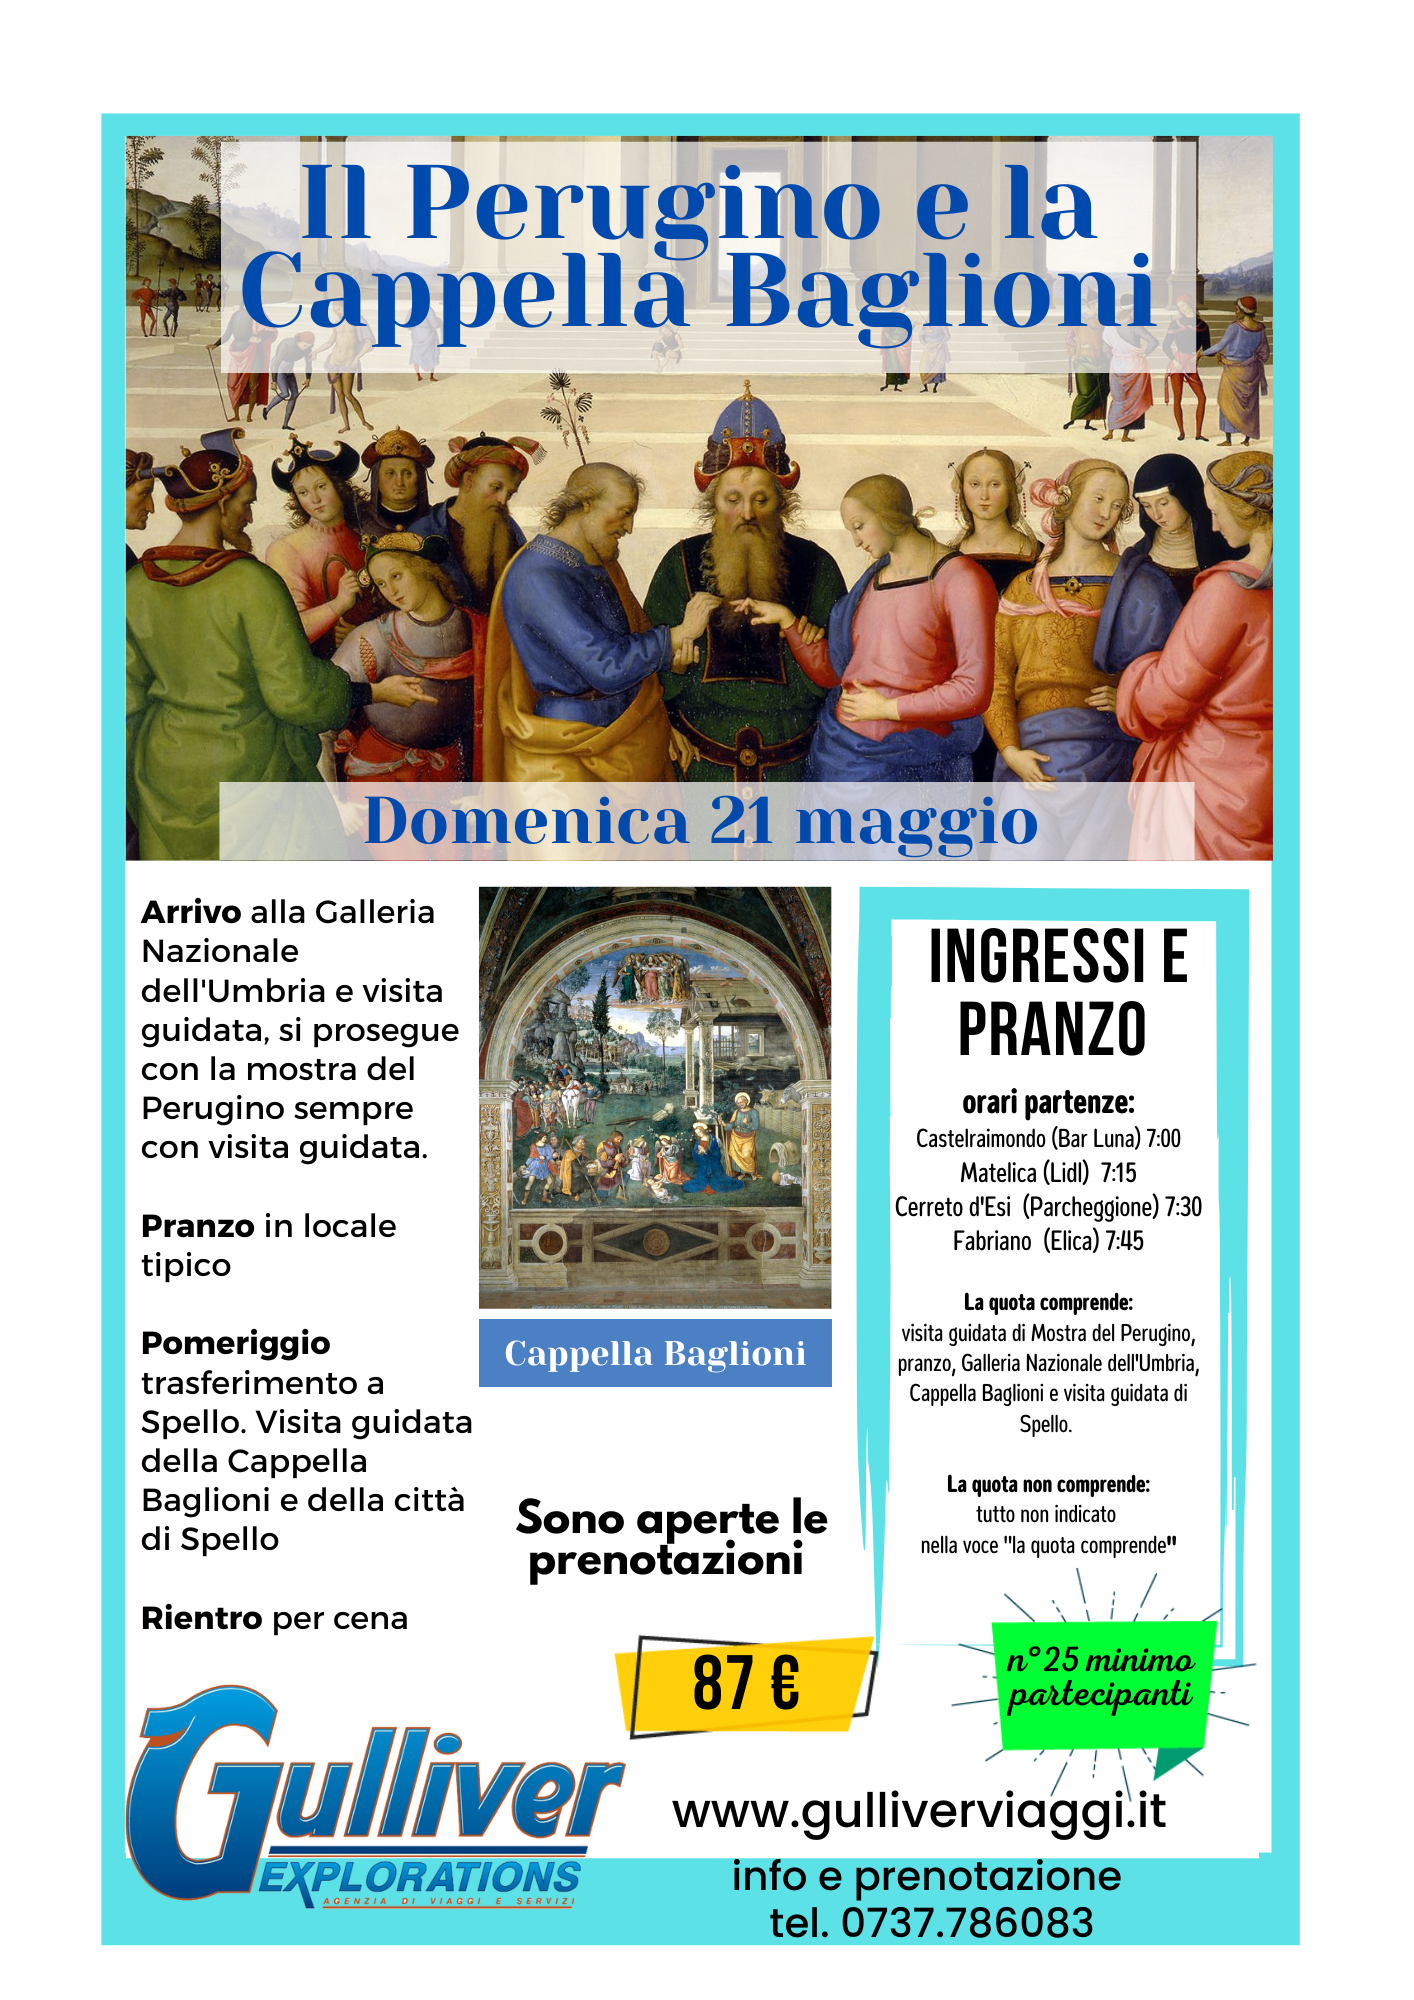 Perugino e cappella Baglioni